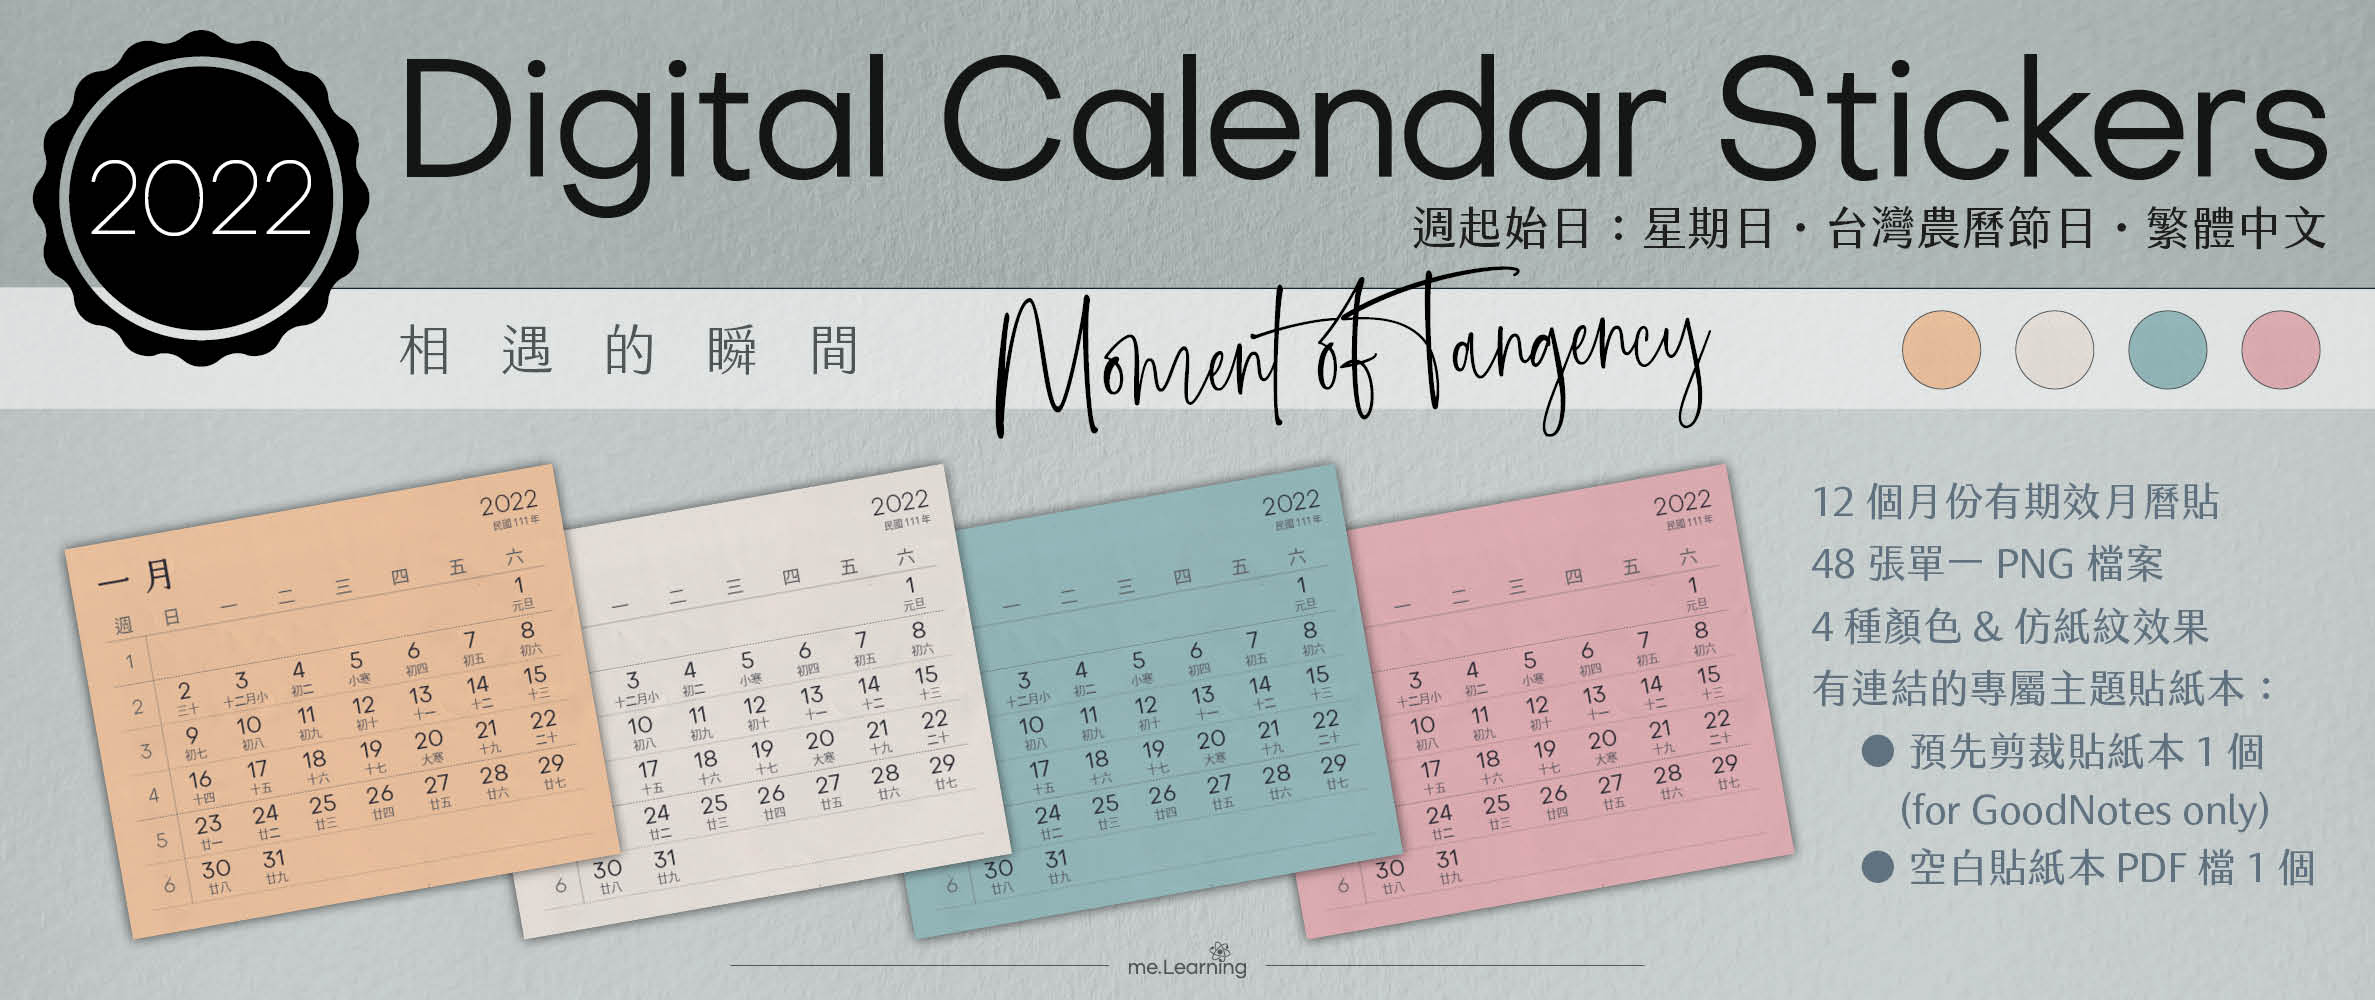 月曆貼-台灣繁中-2022年-相遇的瞬間-電子貼紙包Style001-農曆-Sunday start-CD0007